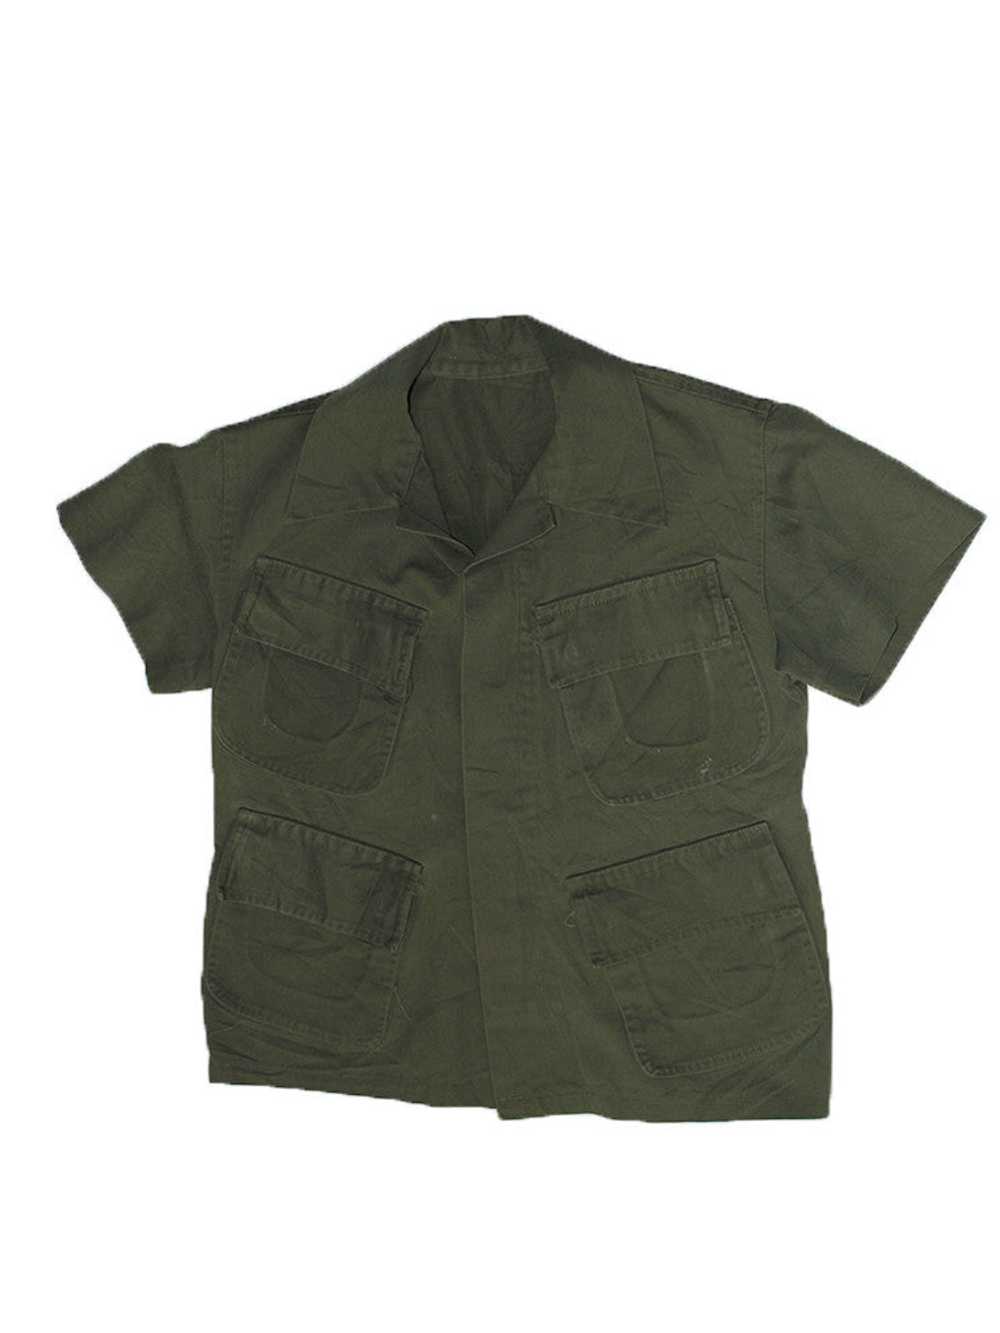 Vintage 60's Vietnam Slant Pocket Tiger Army Shirt - image 2